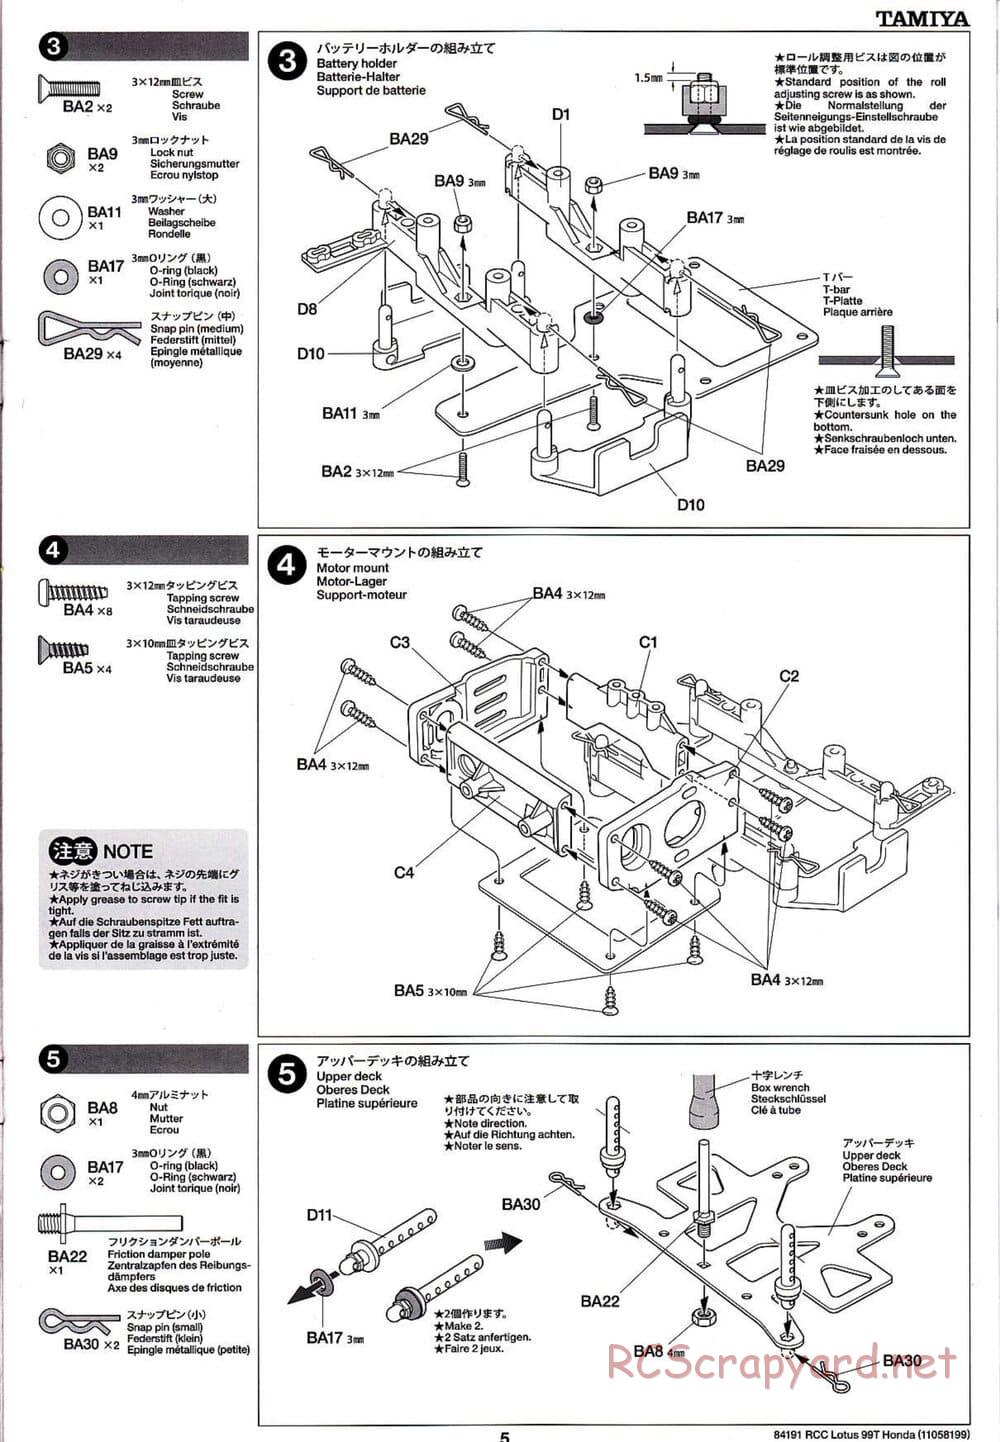 Tamiya - Team Lotus 99T Honda - F103 Chassis - Manual - Page 5